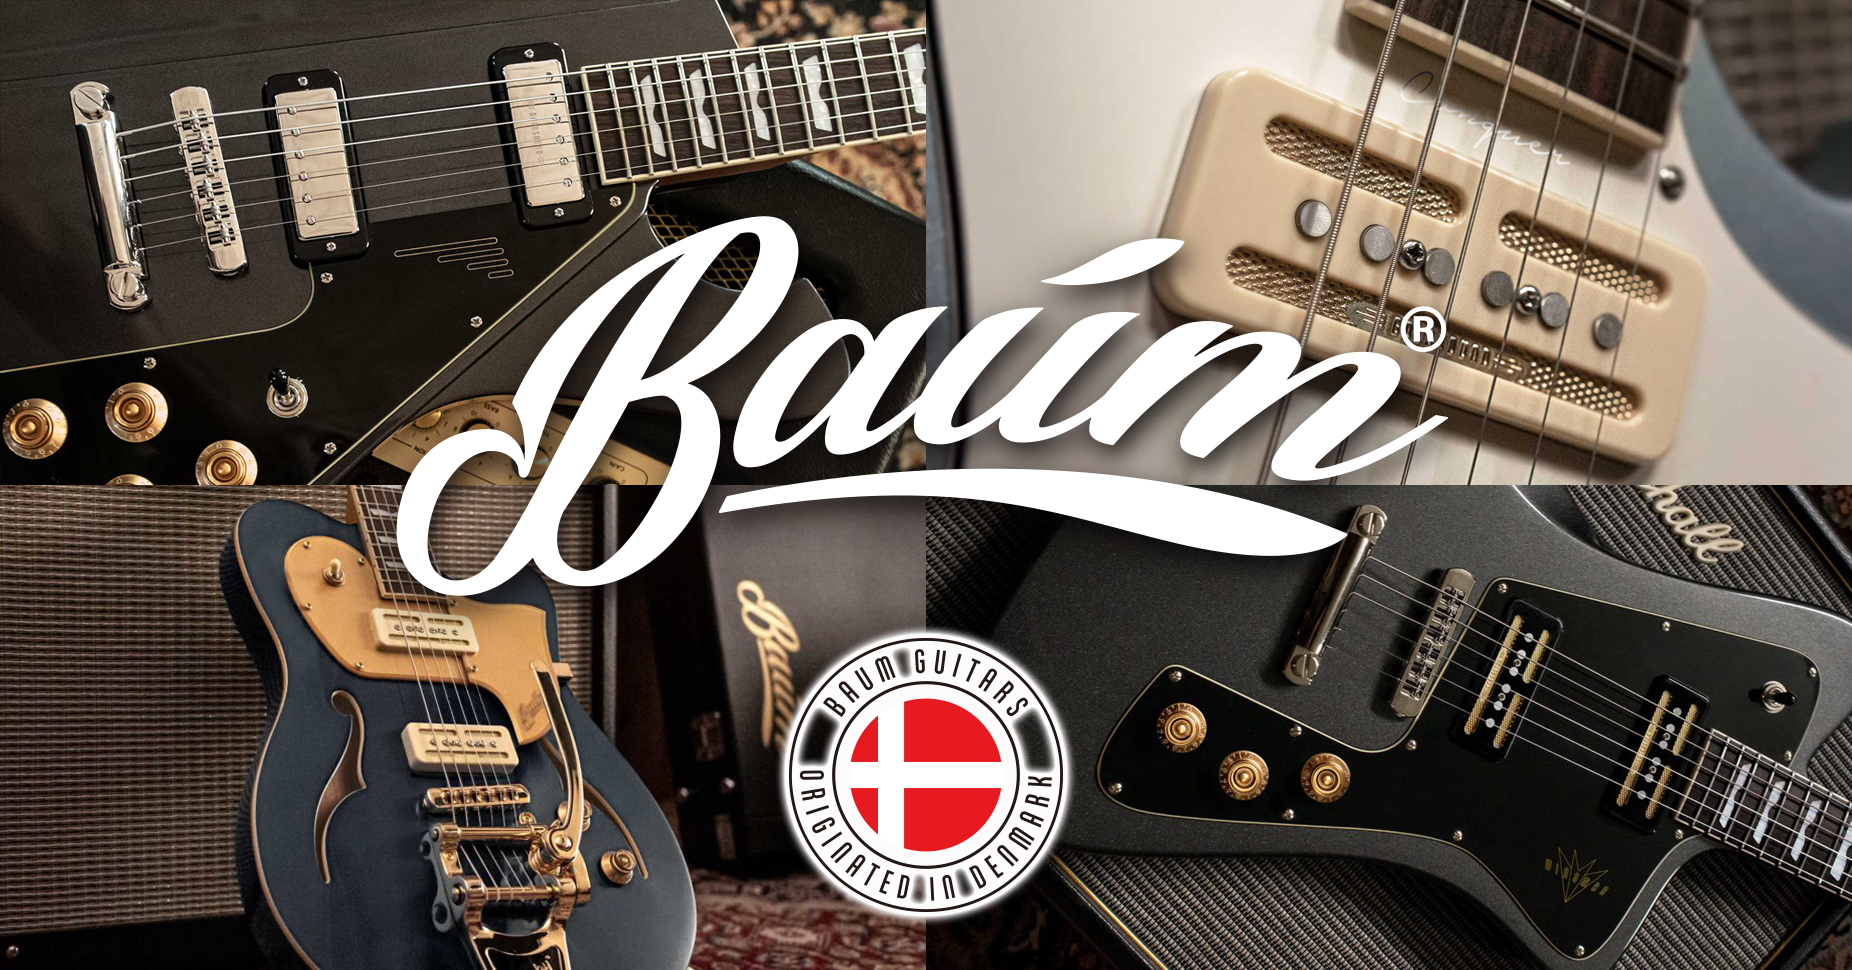 北欧デンマーク発のギター ブランド バウム ギターズ がついに国内販売を開始 株式会社 神田商会のプレスリリース